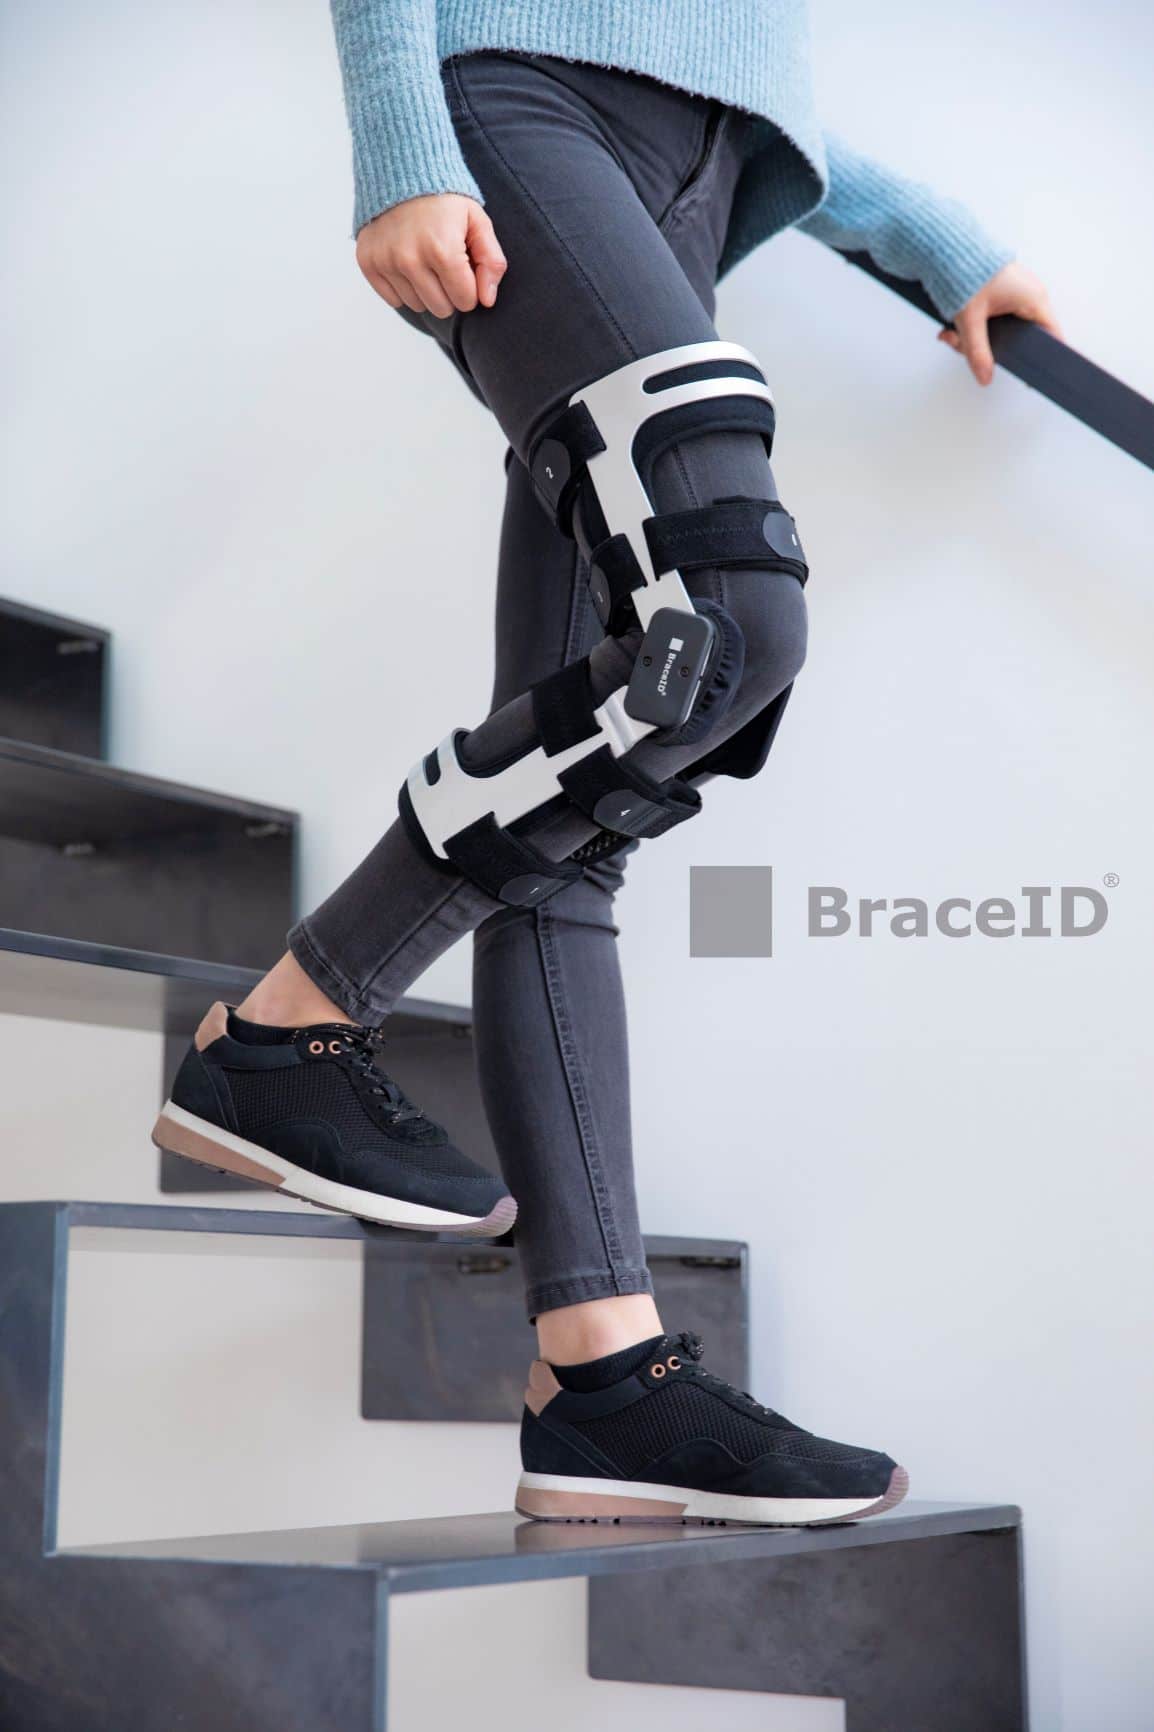 Functional Knee Brace